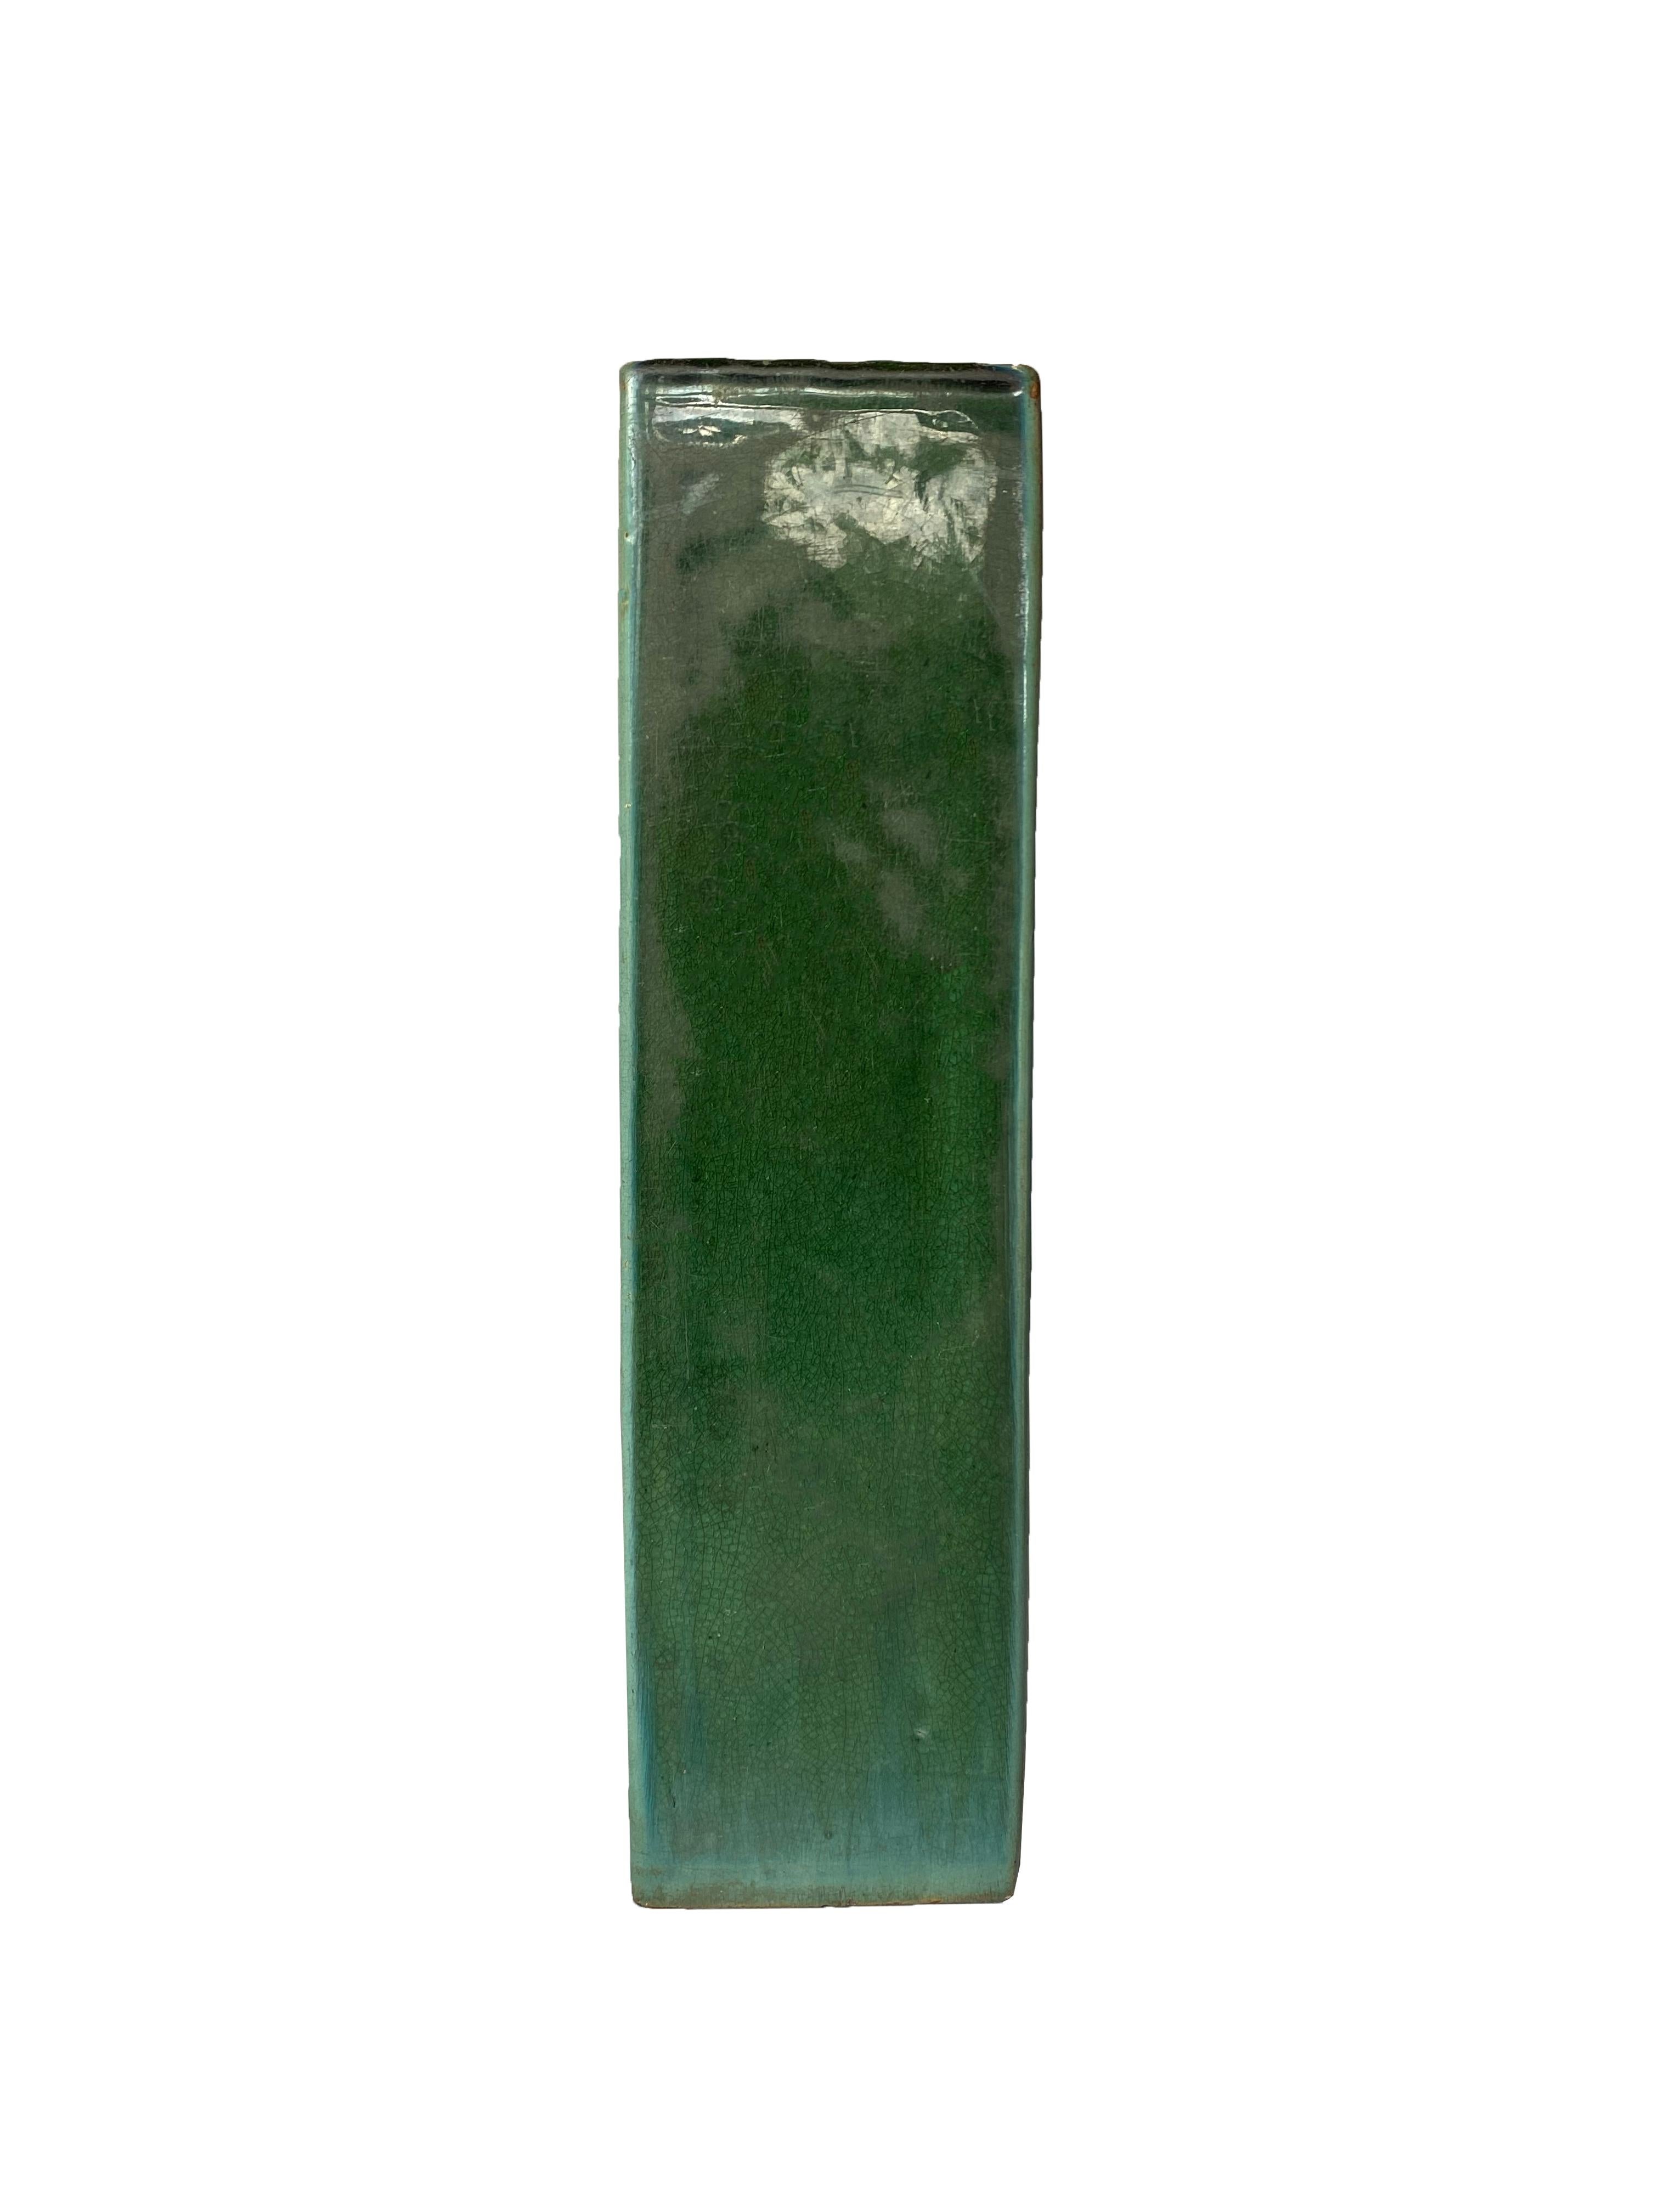 Ce coussin en faïence de Shiwan présente une glaçure verte avec des nuances de bleu. Les oreillers de cette forme n'étaient pas seulement utilisés par les fumeurs d'opium, mais le plus souvent dans les fumeries d'opium. La céramique de Shiwan est